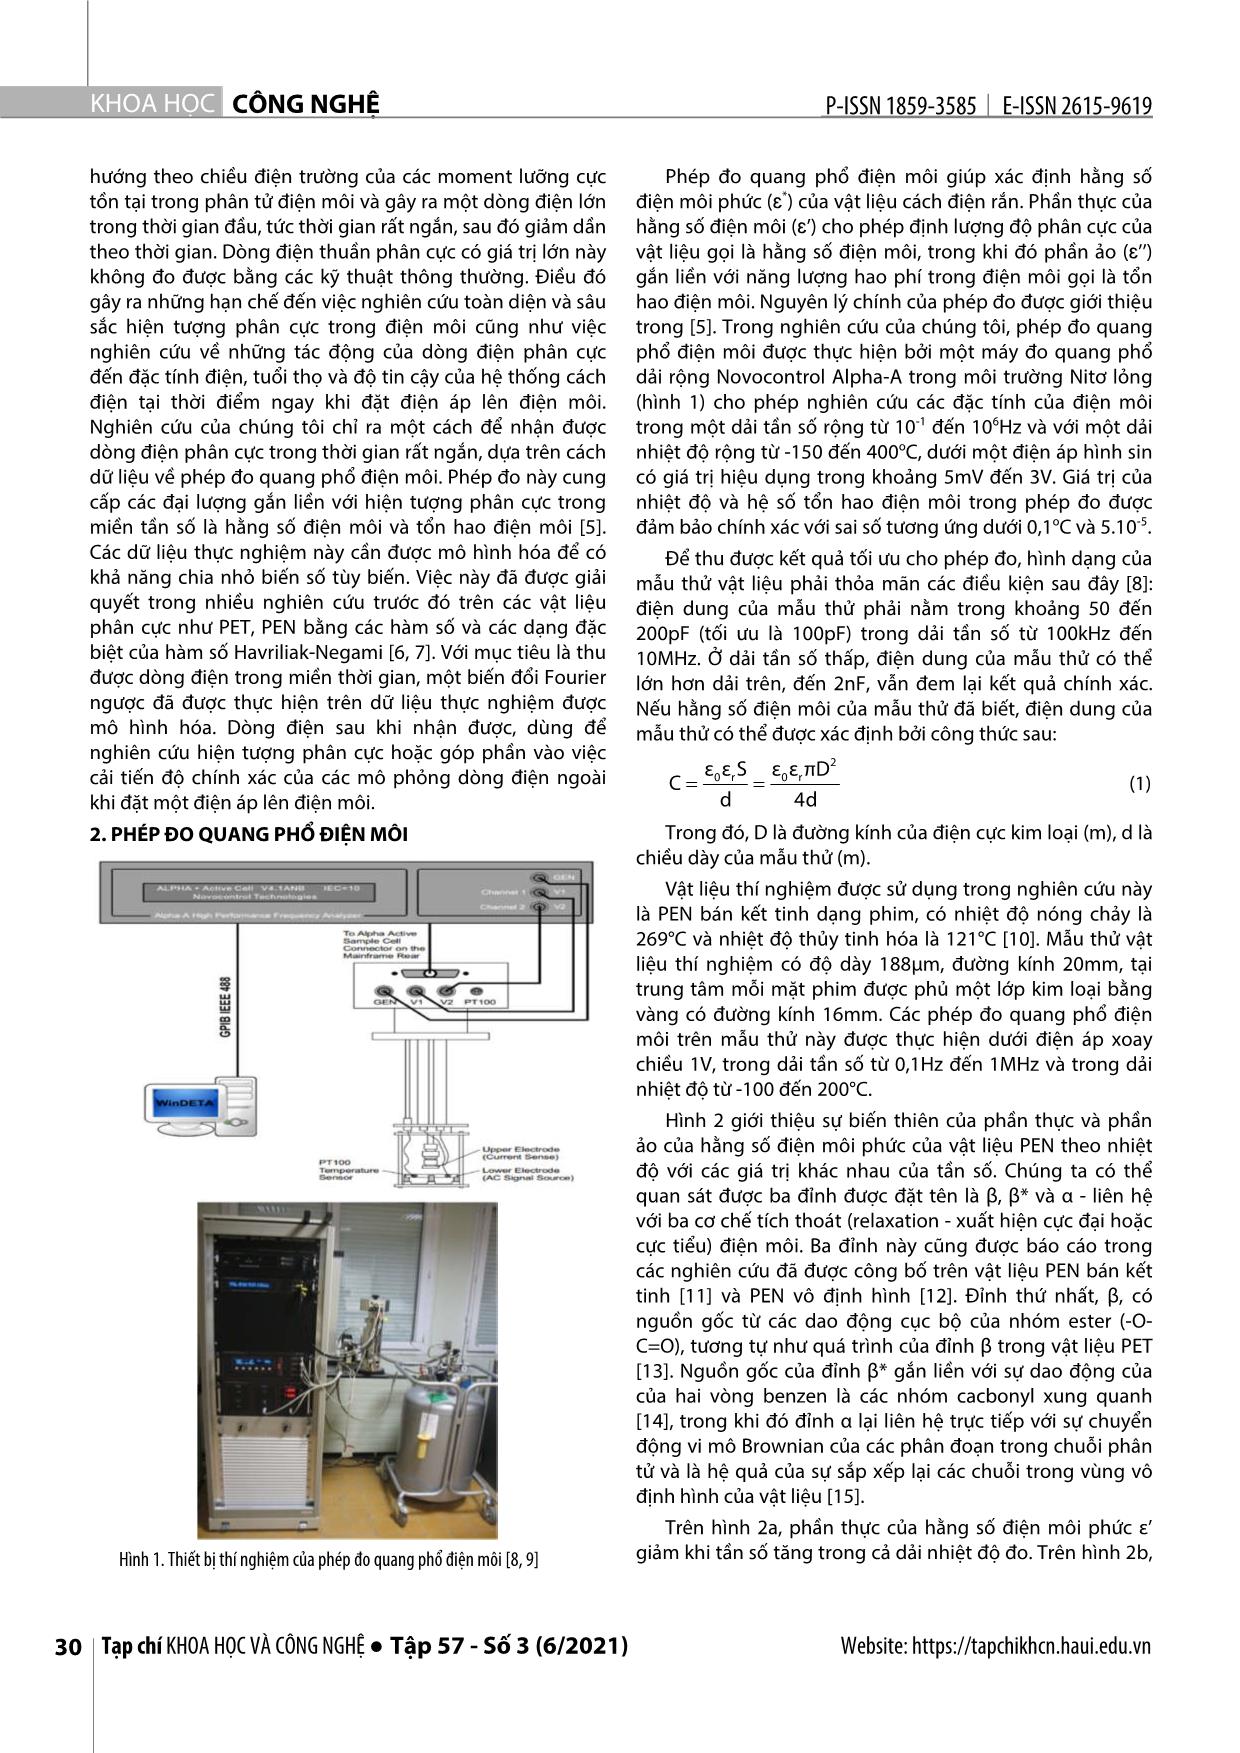 Phương pháp nghịch đảo để thu được dòng điện phân cực trong thời gian rất ngắn từ phép đo quang phổ điện môi trên vật liệu PEN trang 2